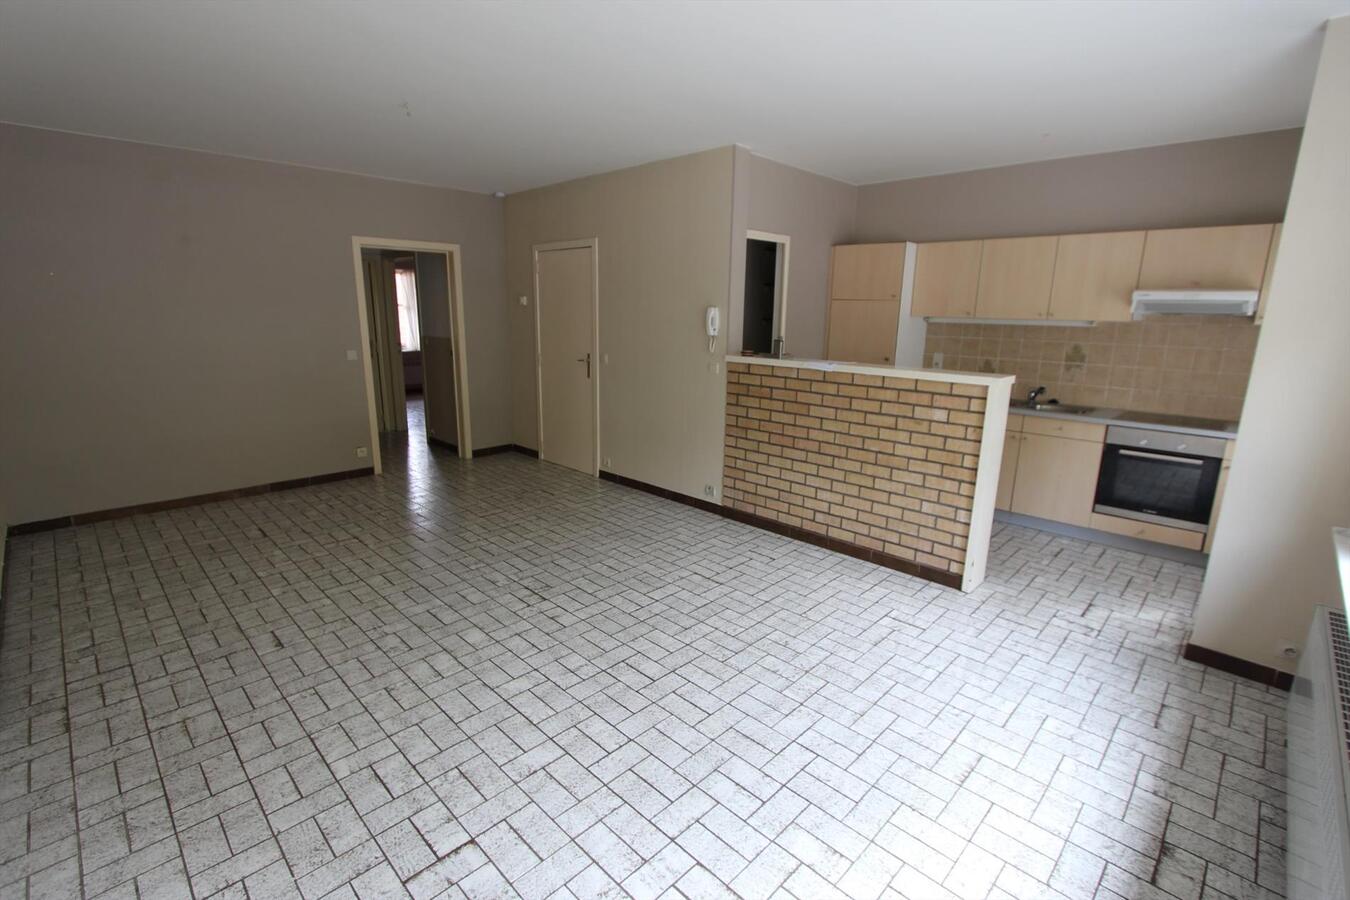 Gelijkvloers appartement met 2 slaapkamers groot terras en garage te Bredene 